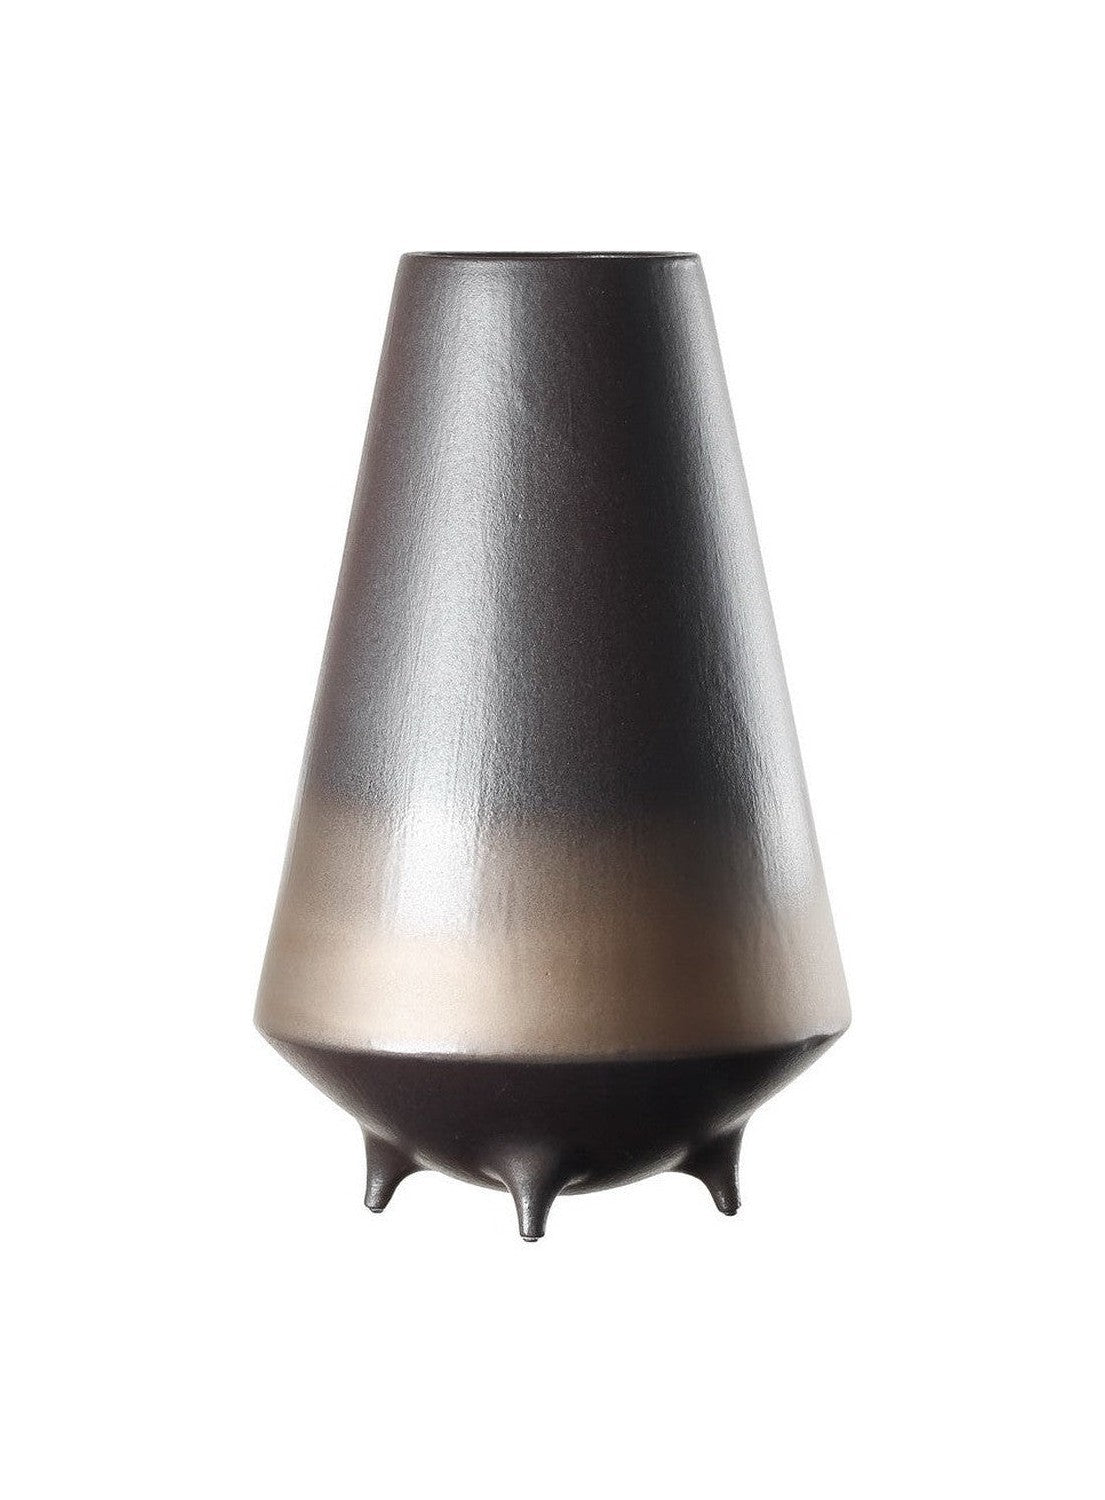 Neue moderne Keramik-High-End-Design-Vase/Schüssel East+West, OTA35BB